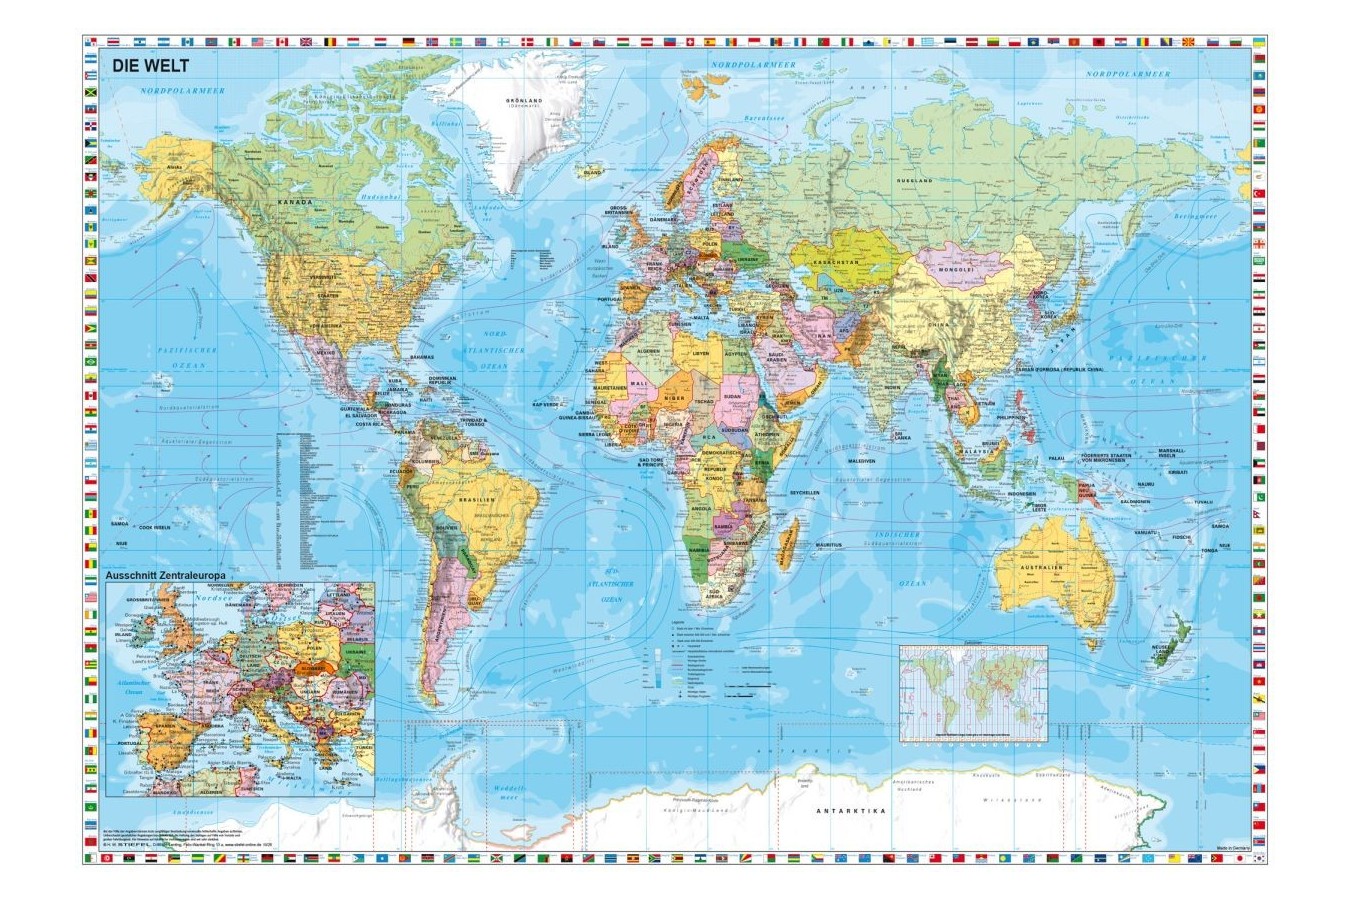 Puzzle Schmidt - Harta lumii, 1500 piese (58289)